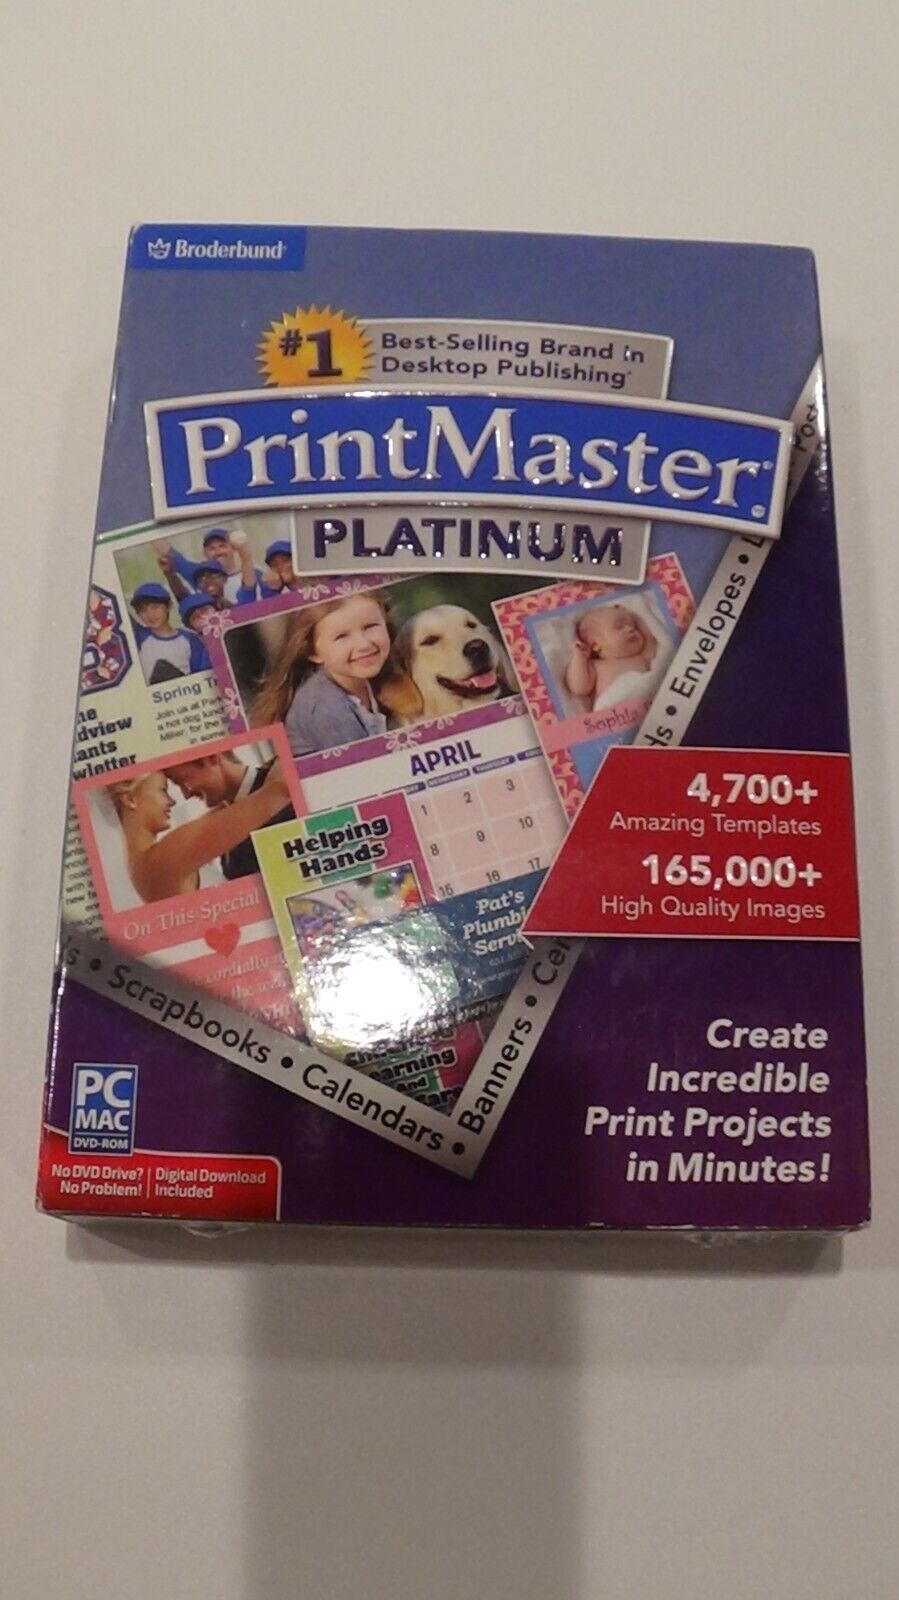 Print Master Platinum